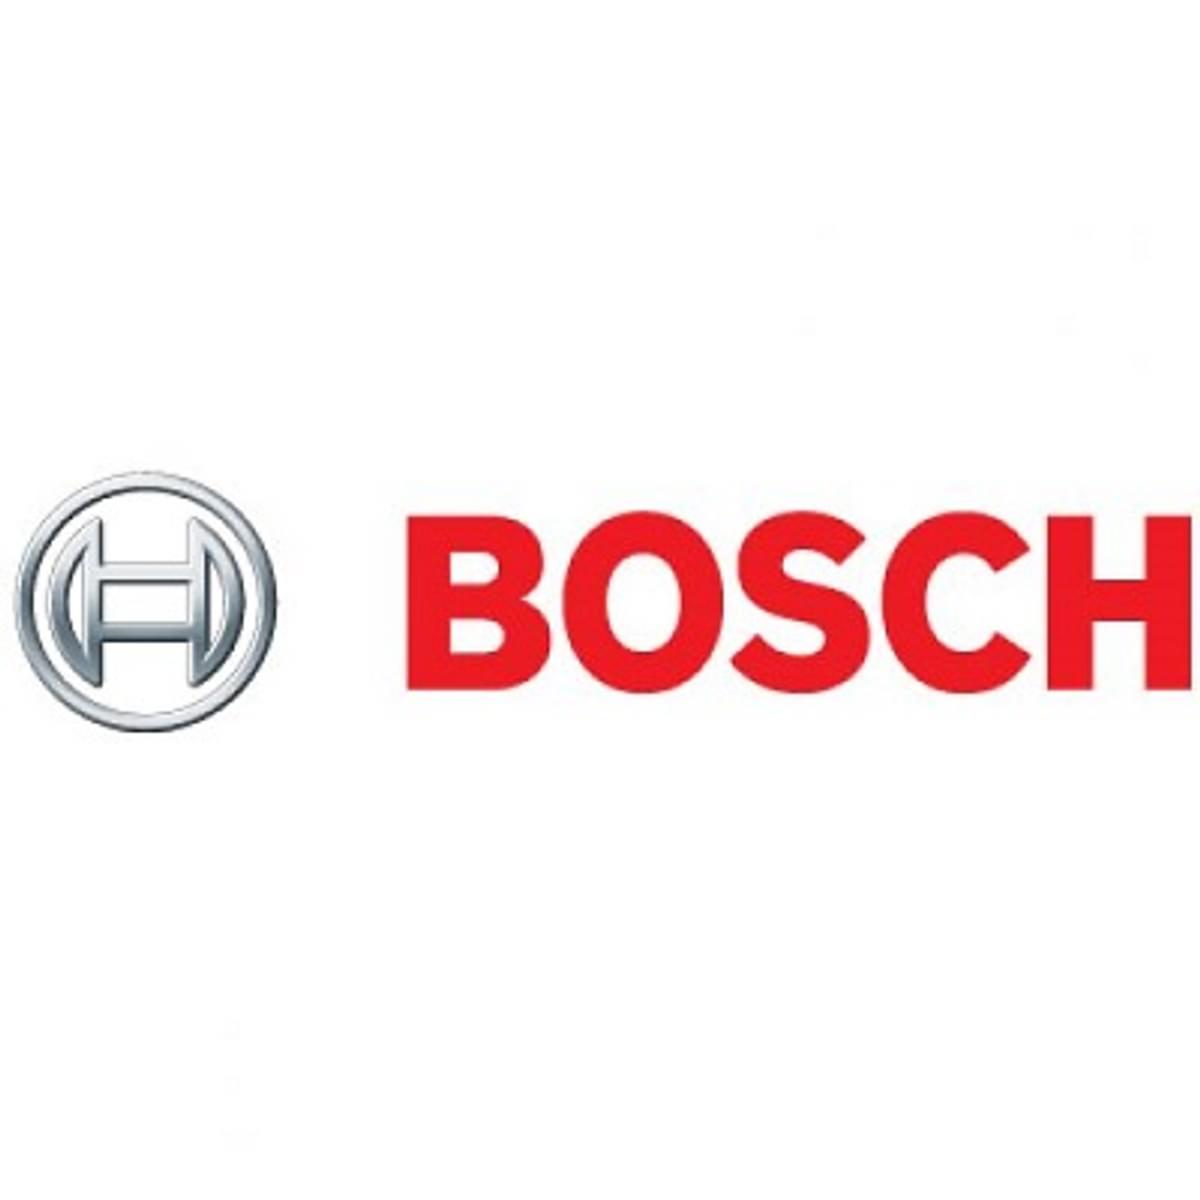 Bosch gaat chips voor automotivesector produceren in Dresden image